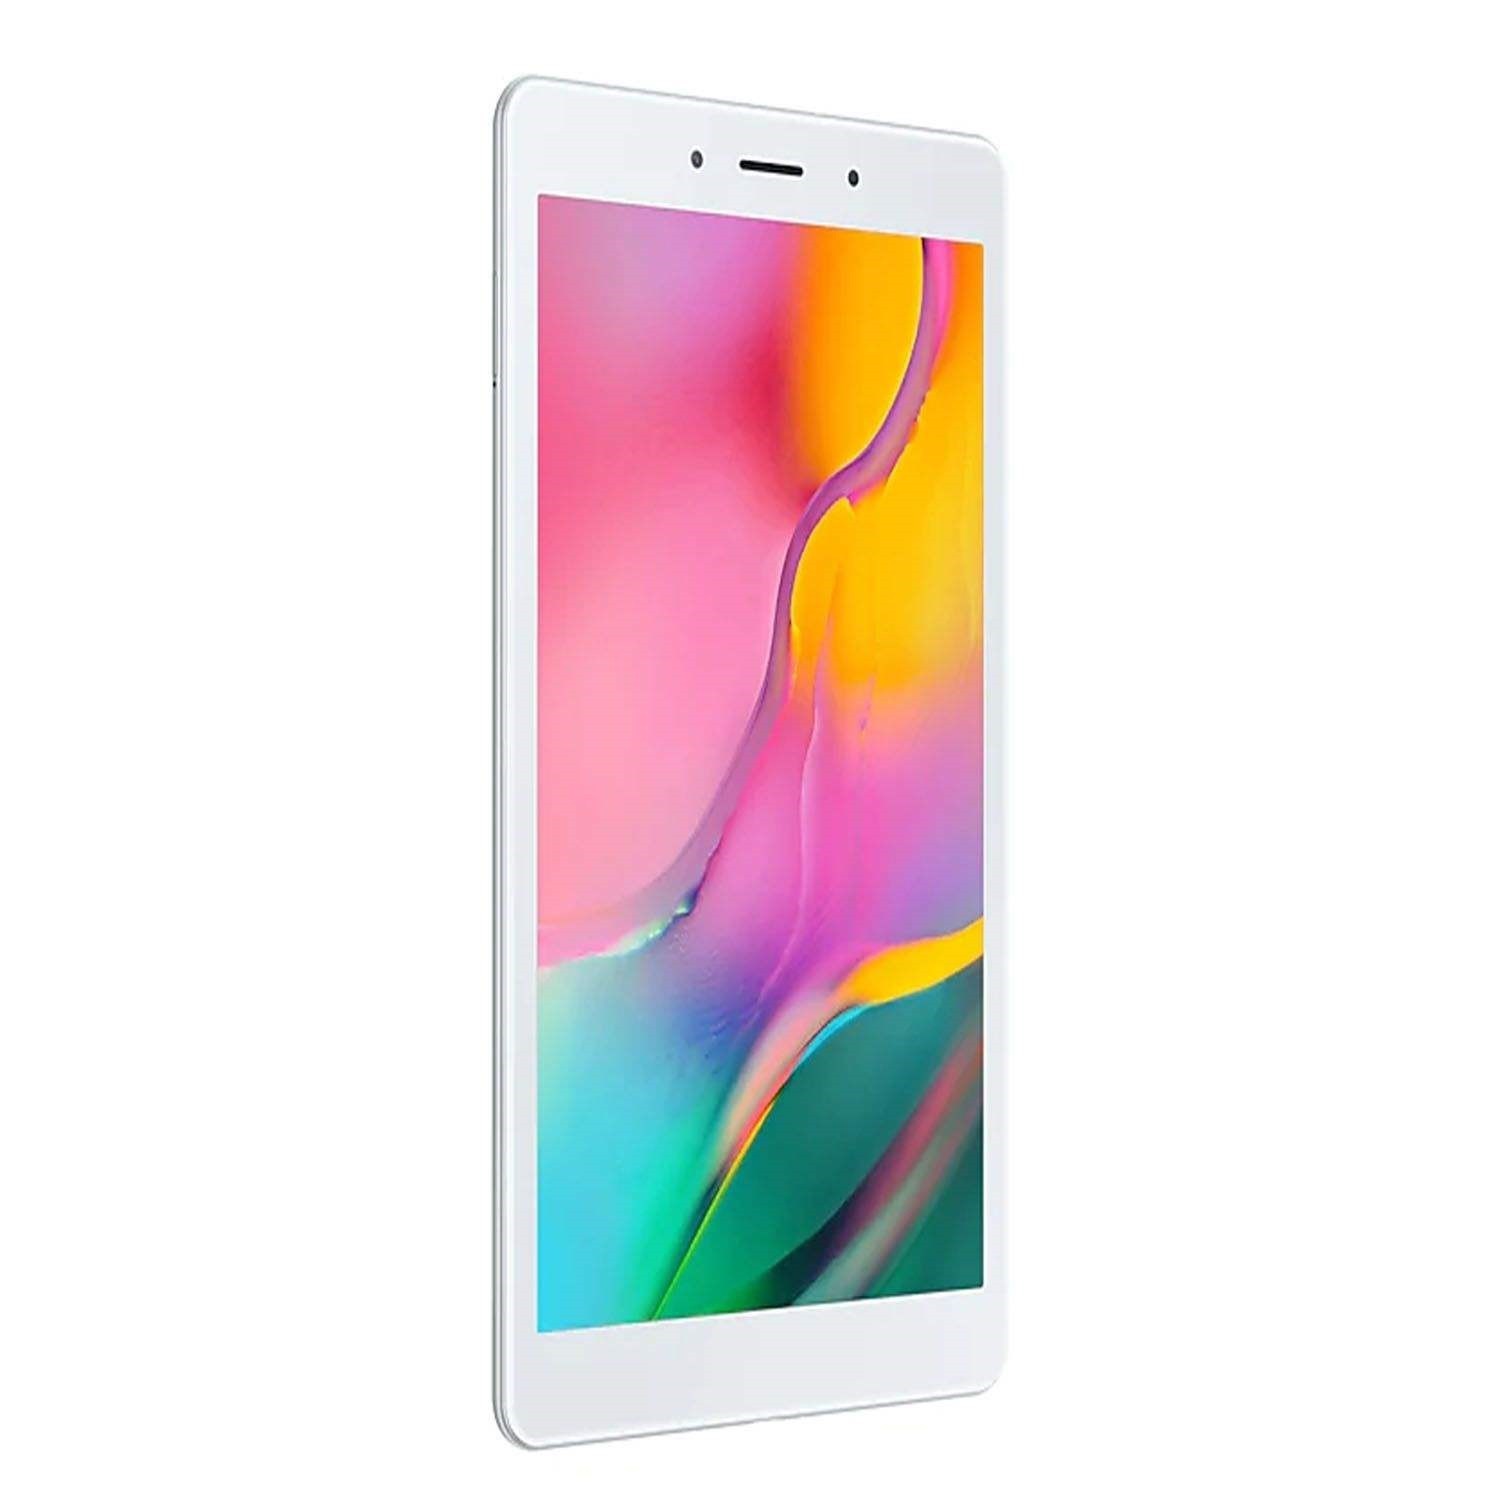 تبلت سامسونگ مدل Galaxy Tab A 8.0 2019 WiFi SM-T290 ظرفیت 32 گیگابایت